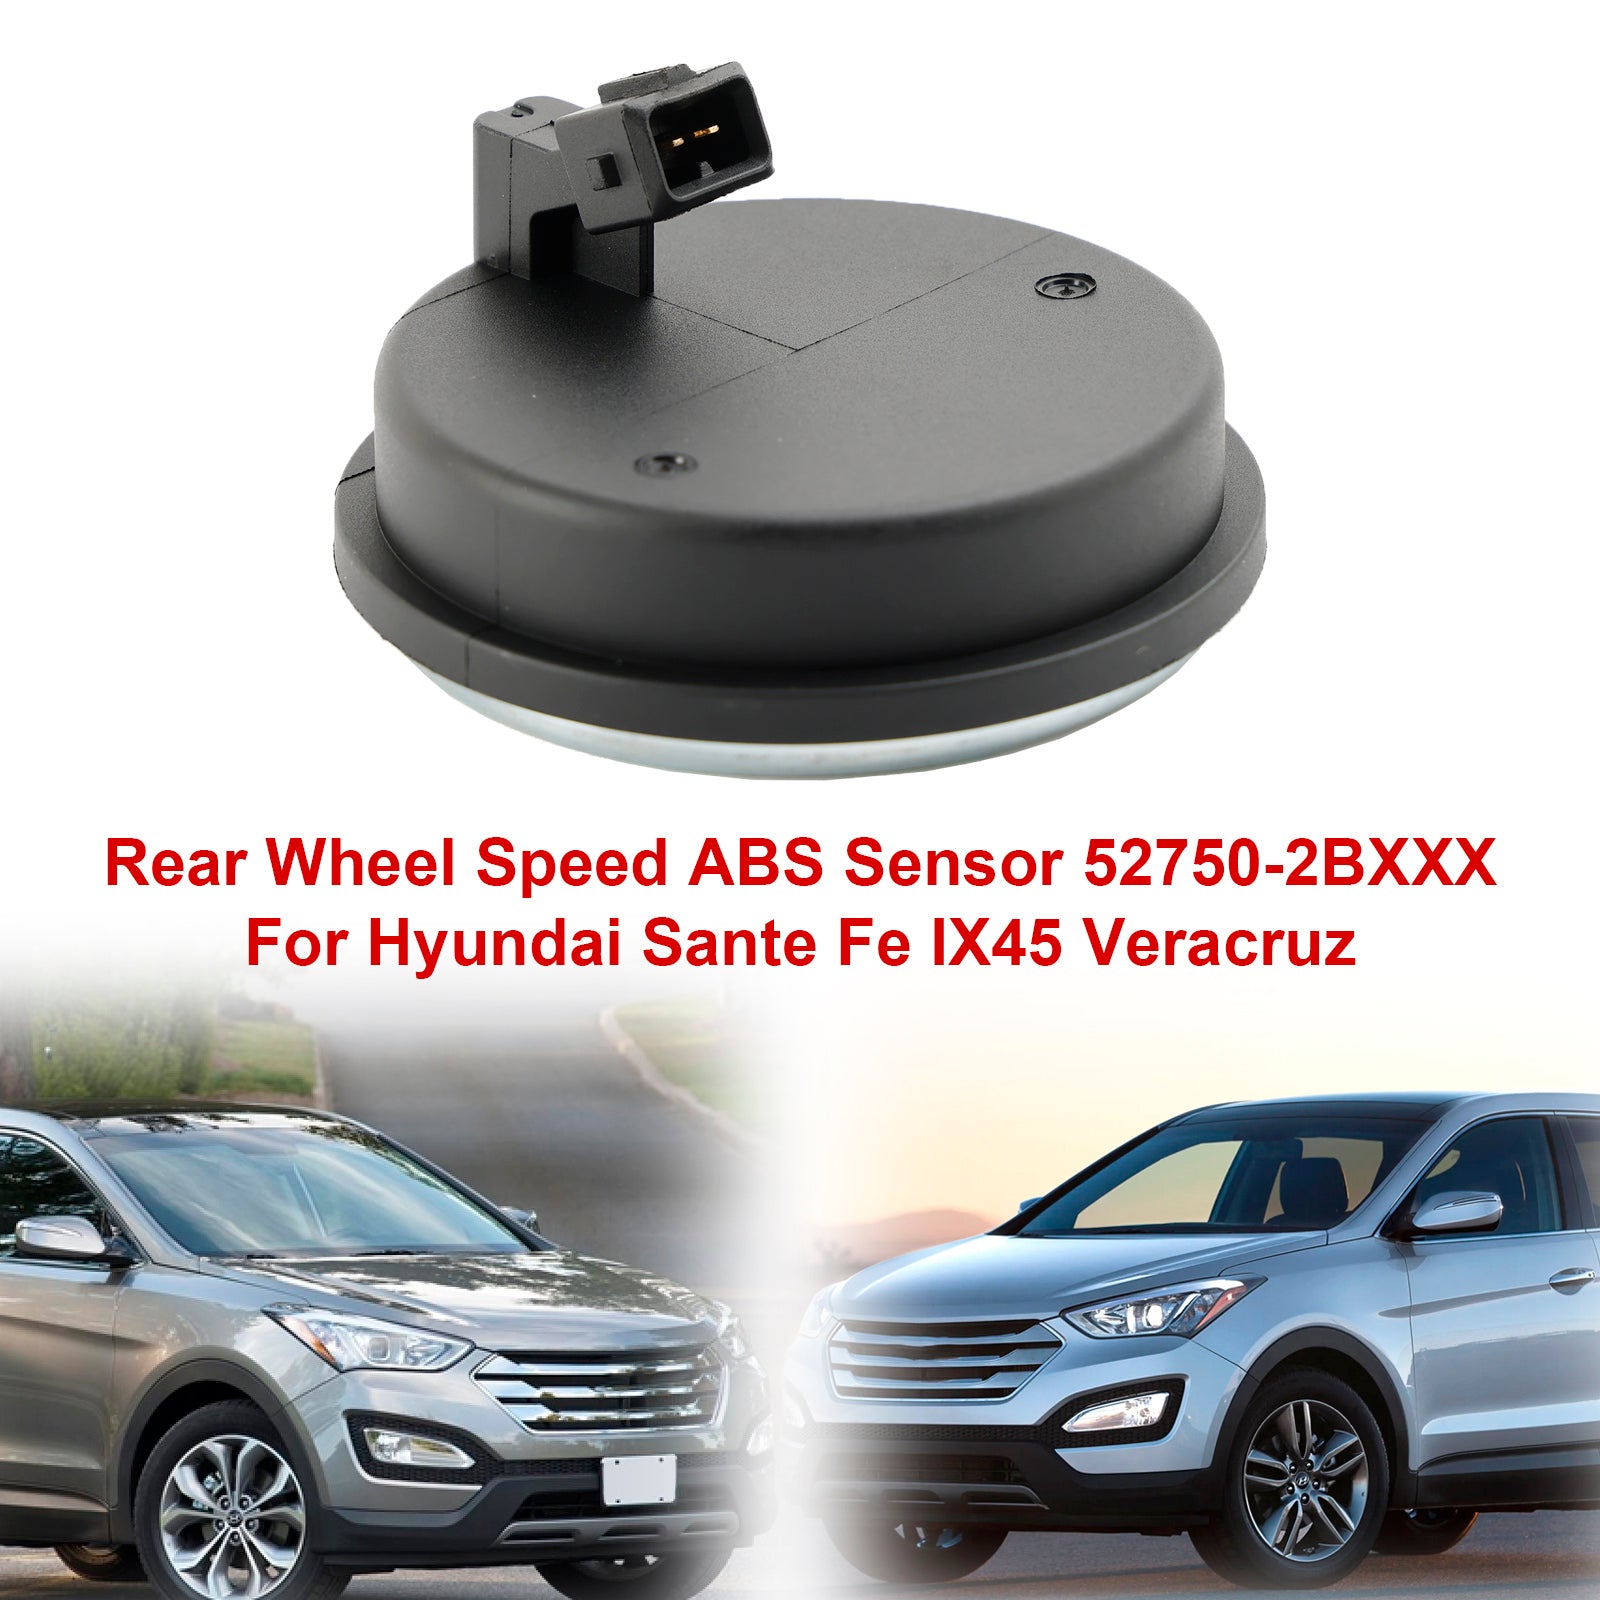 Sensore ABS velocità ruota posteriore 52750-2BXXX per Hyundai Sante Fe IX45 Veracruz